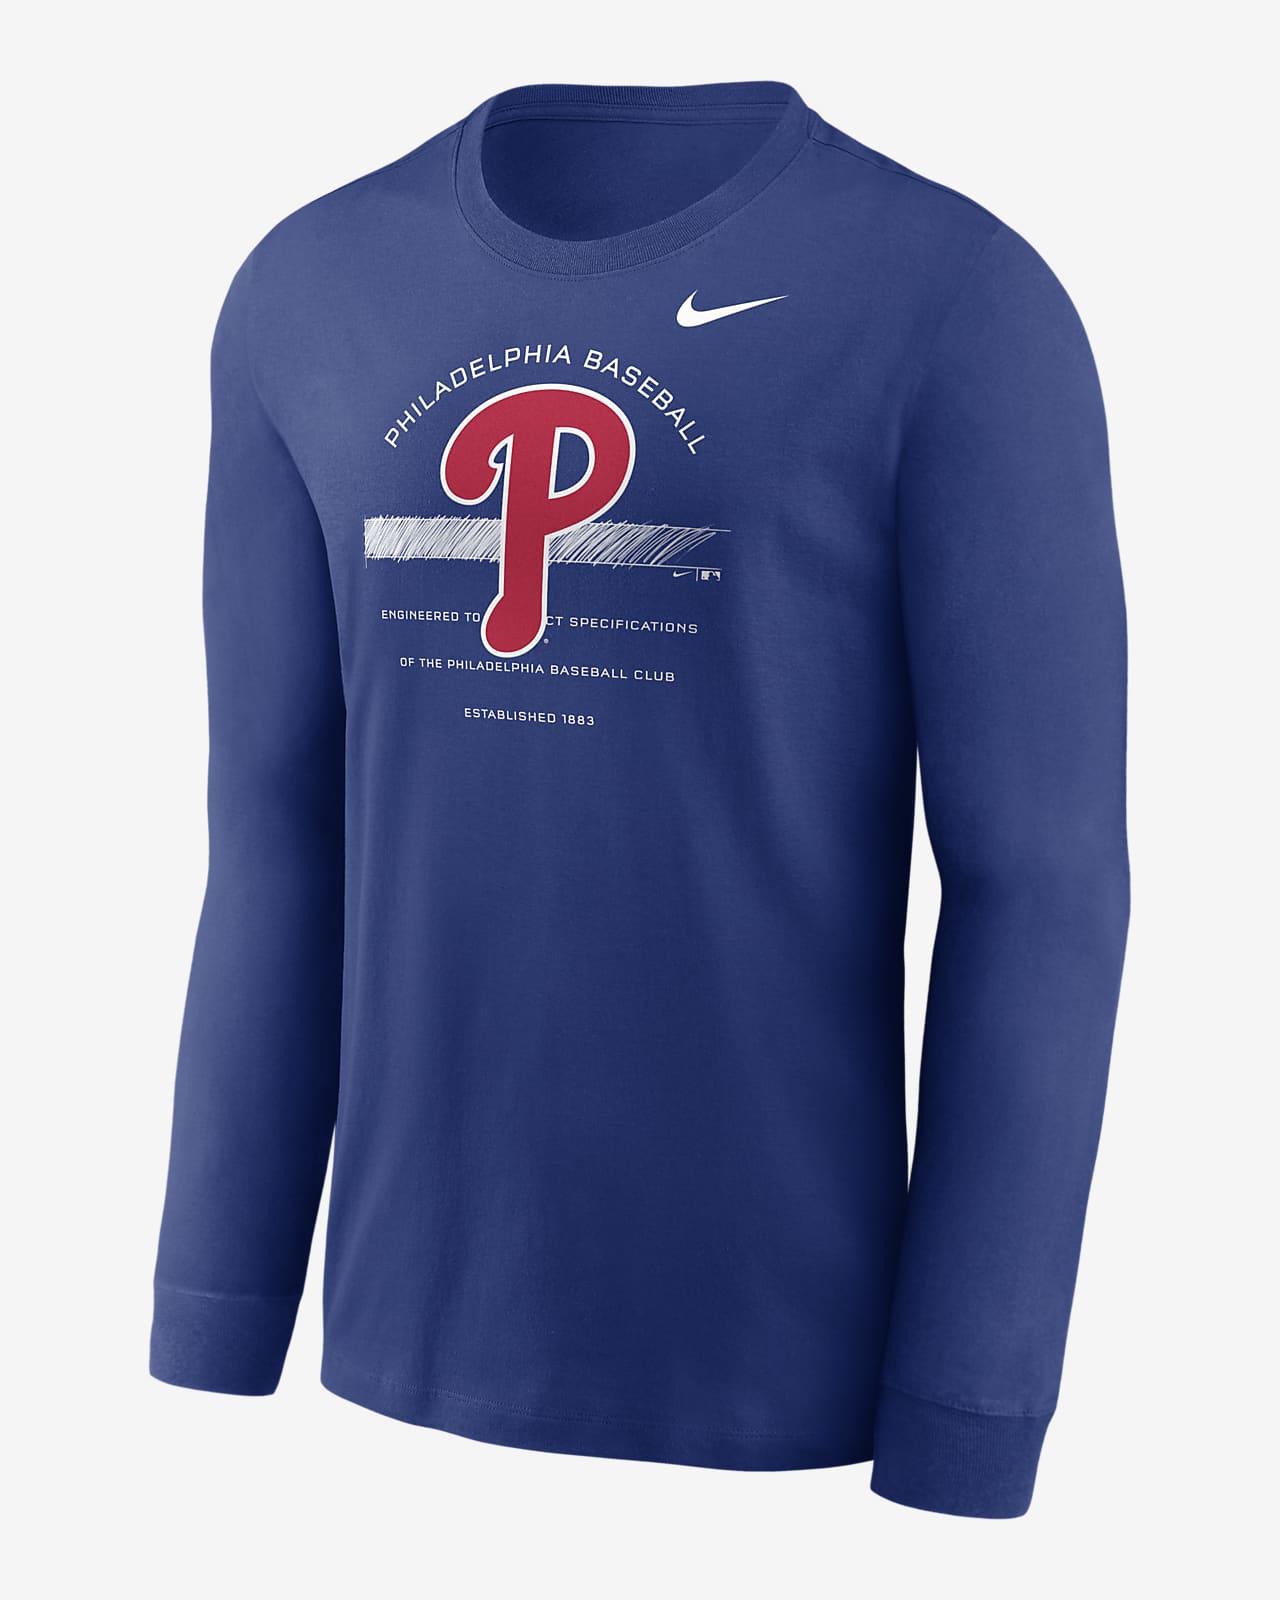 philadelphia baseball shirt